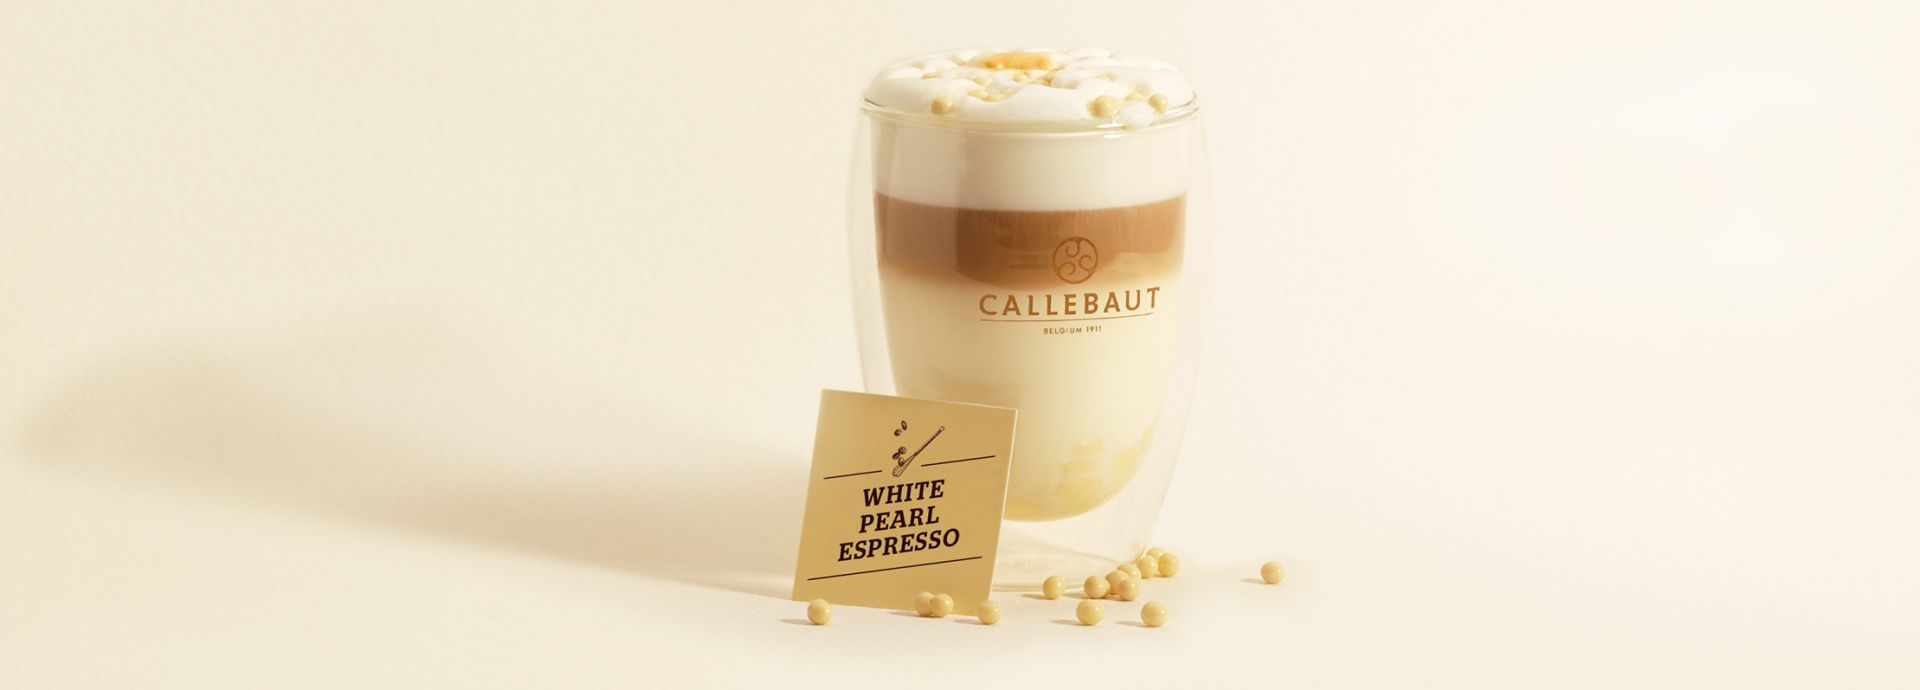 Hot chocolate white pearl espresso